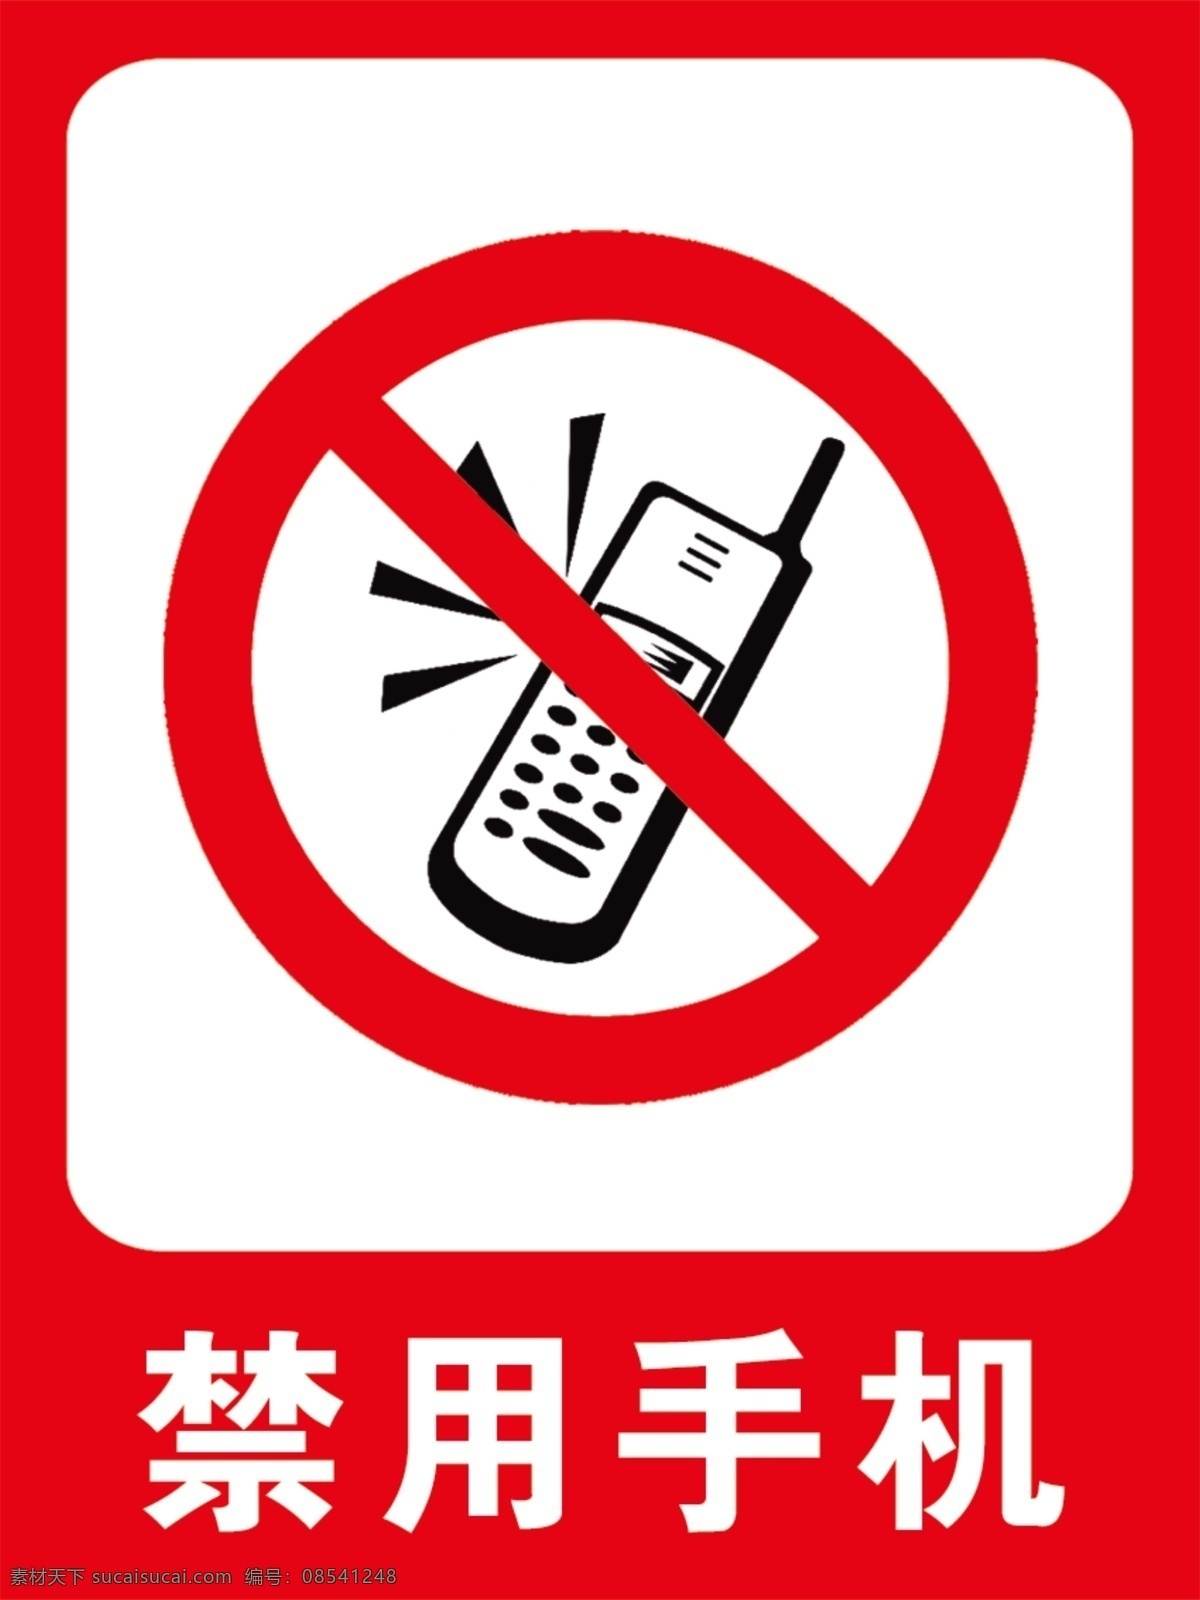 禁用手机 禁止 指示牌 红边框 手机 白字 标准